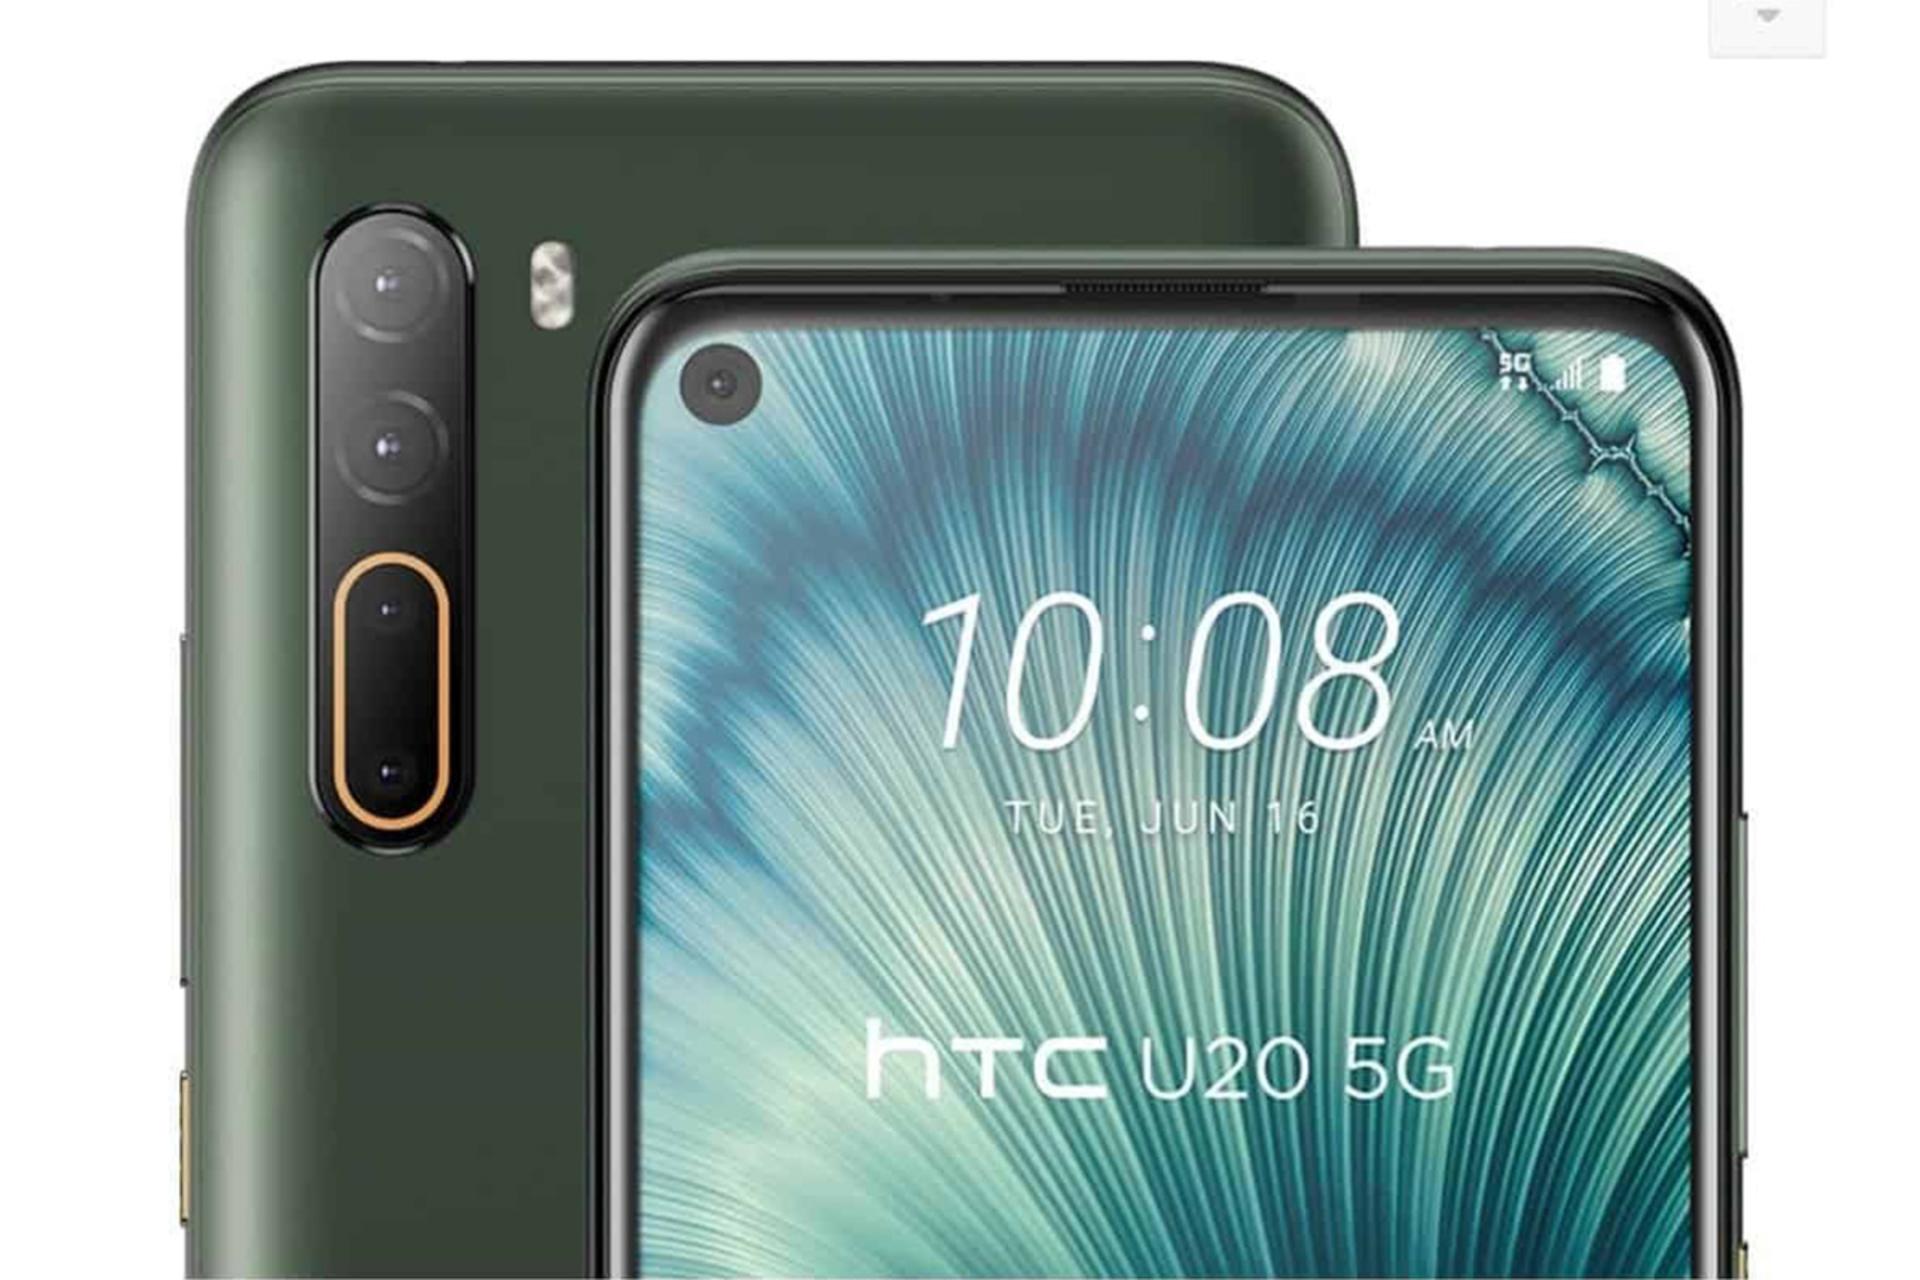 گوشی اچ تی سی یو ۲۰ ۵ جی نمای جلو و پشت رنگ سبز / HTC U20 5G